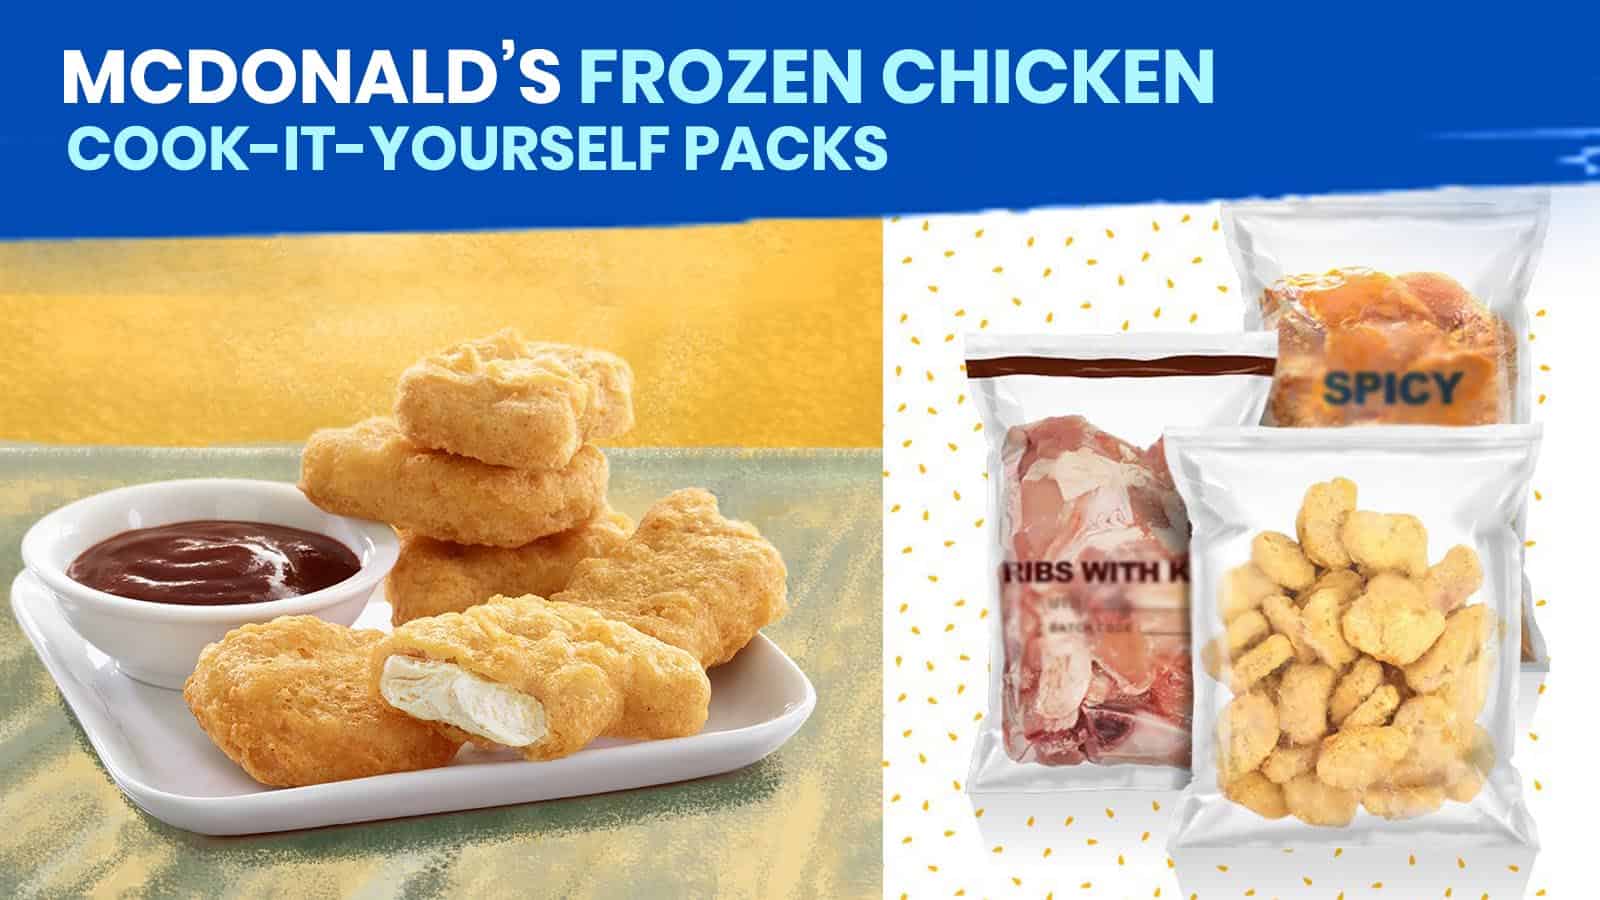 麦当劳的冷冻鸡肉和自己煮的包装